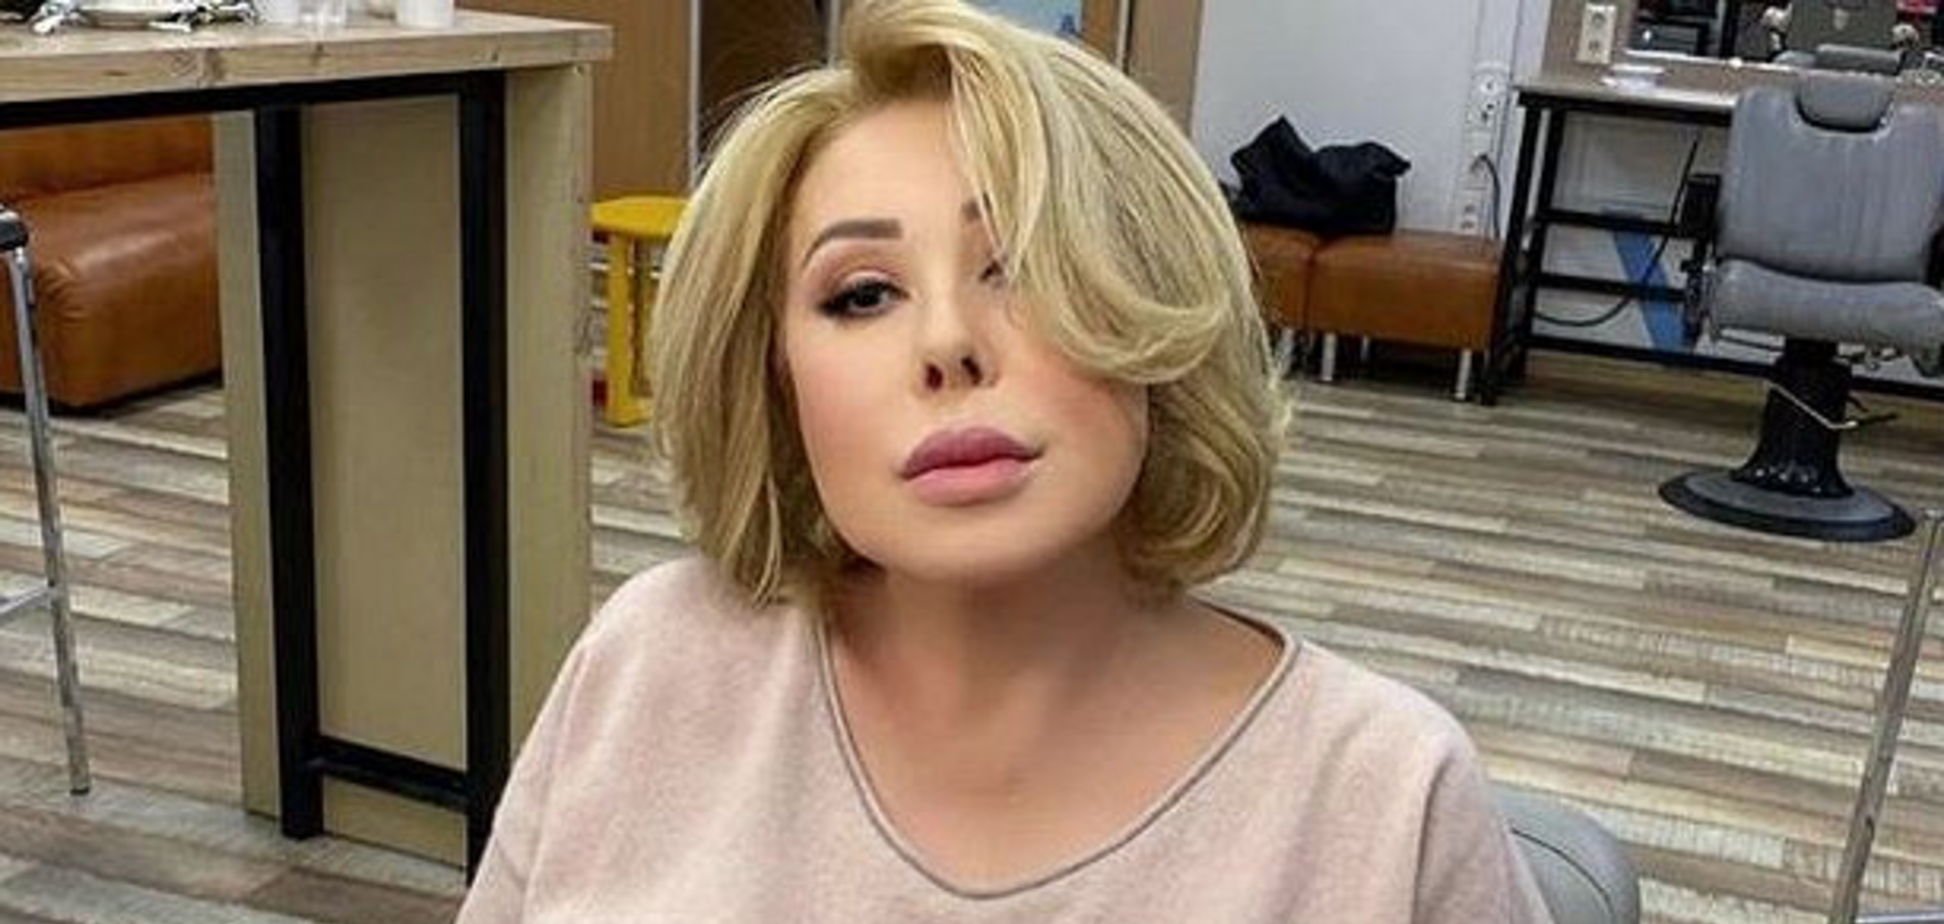 Успенская потеряла сознание и разбила лицо после скандала с дочерью: подробности